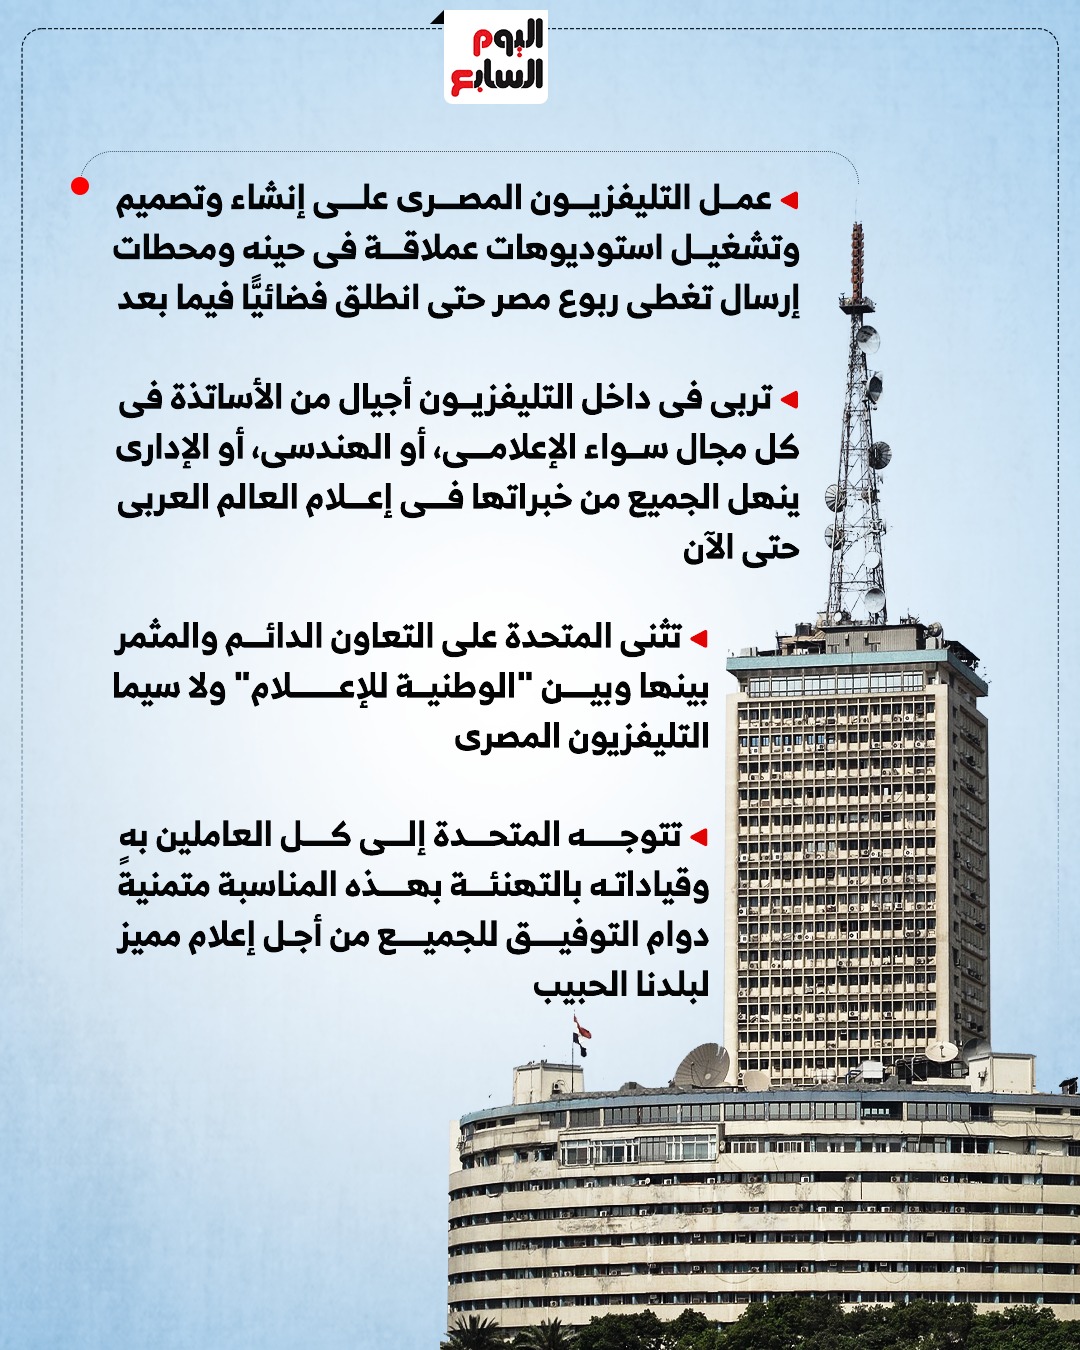 المتحدة تهنئ الوطنية للإعلام بذكرى إطلاق أول إشارة بث تليفزيونى بمصر